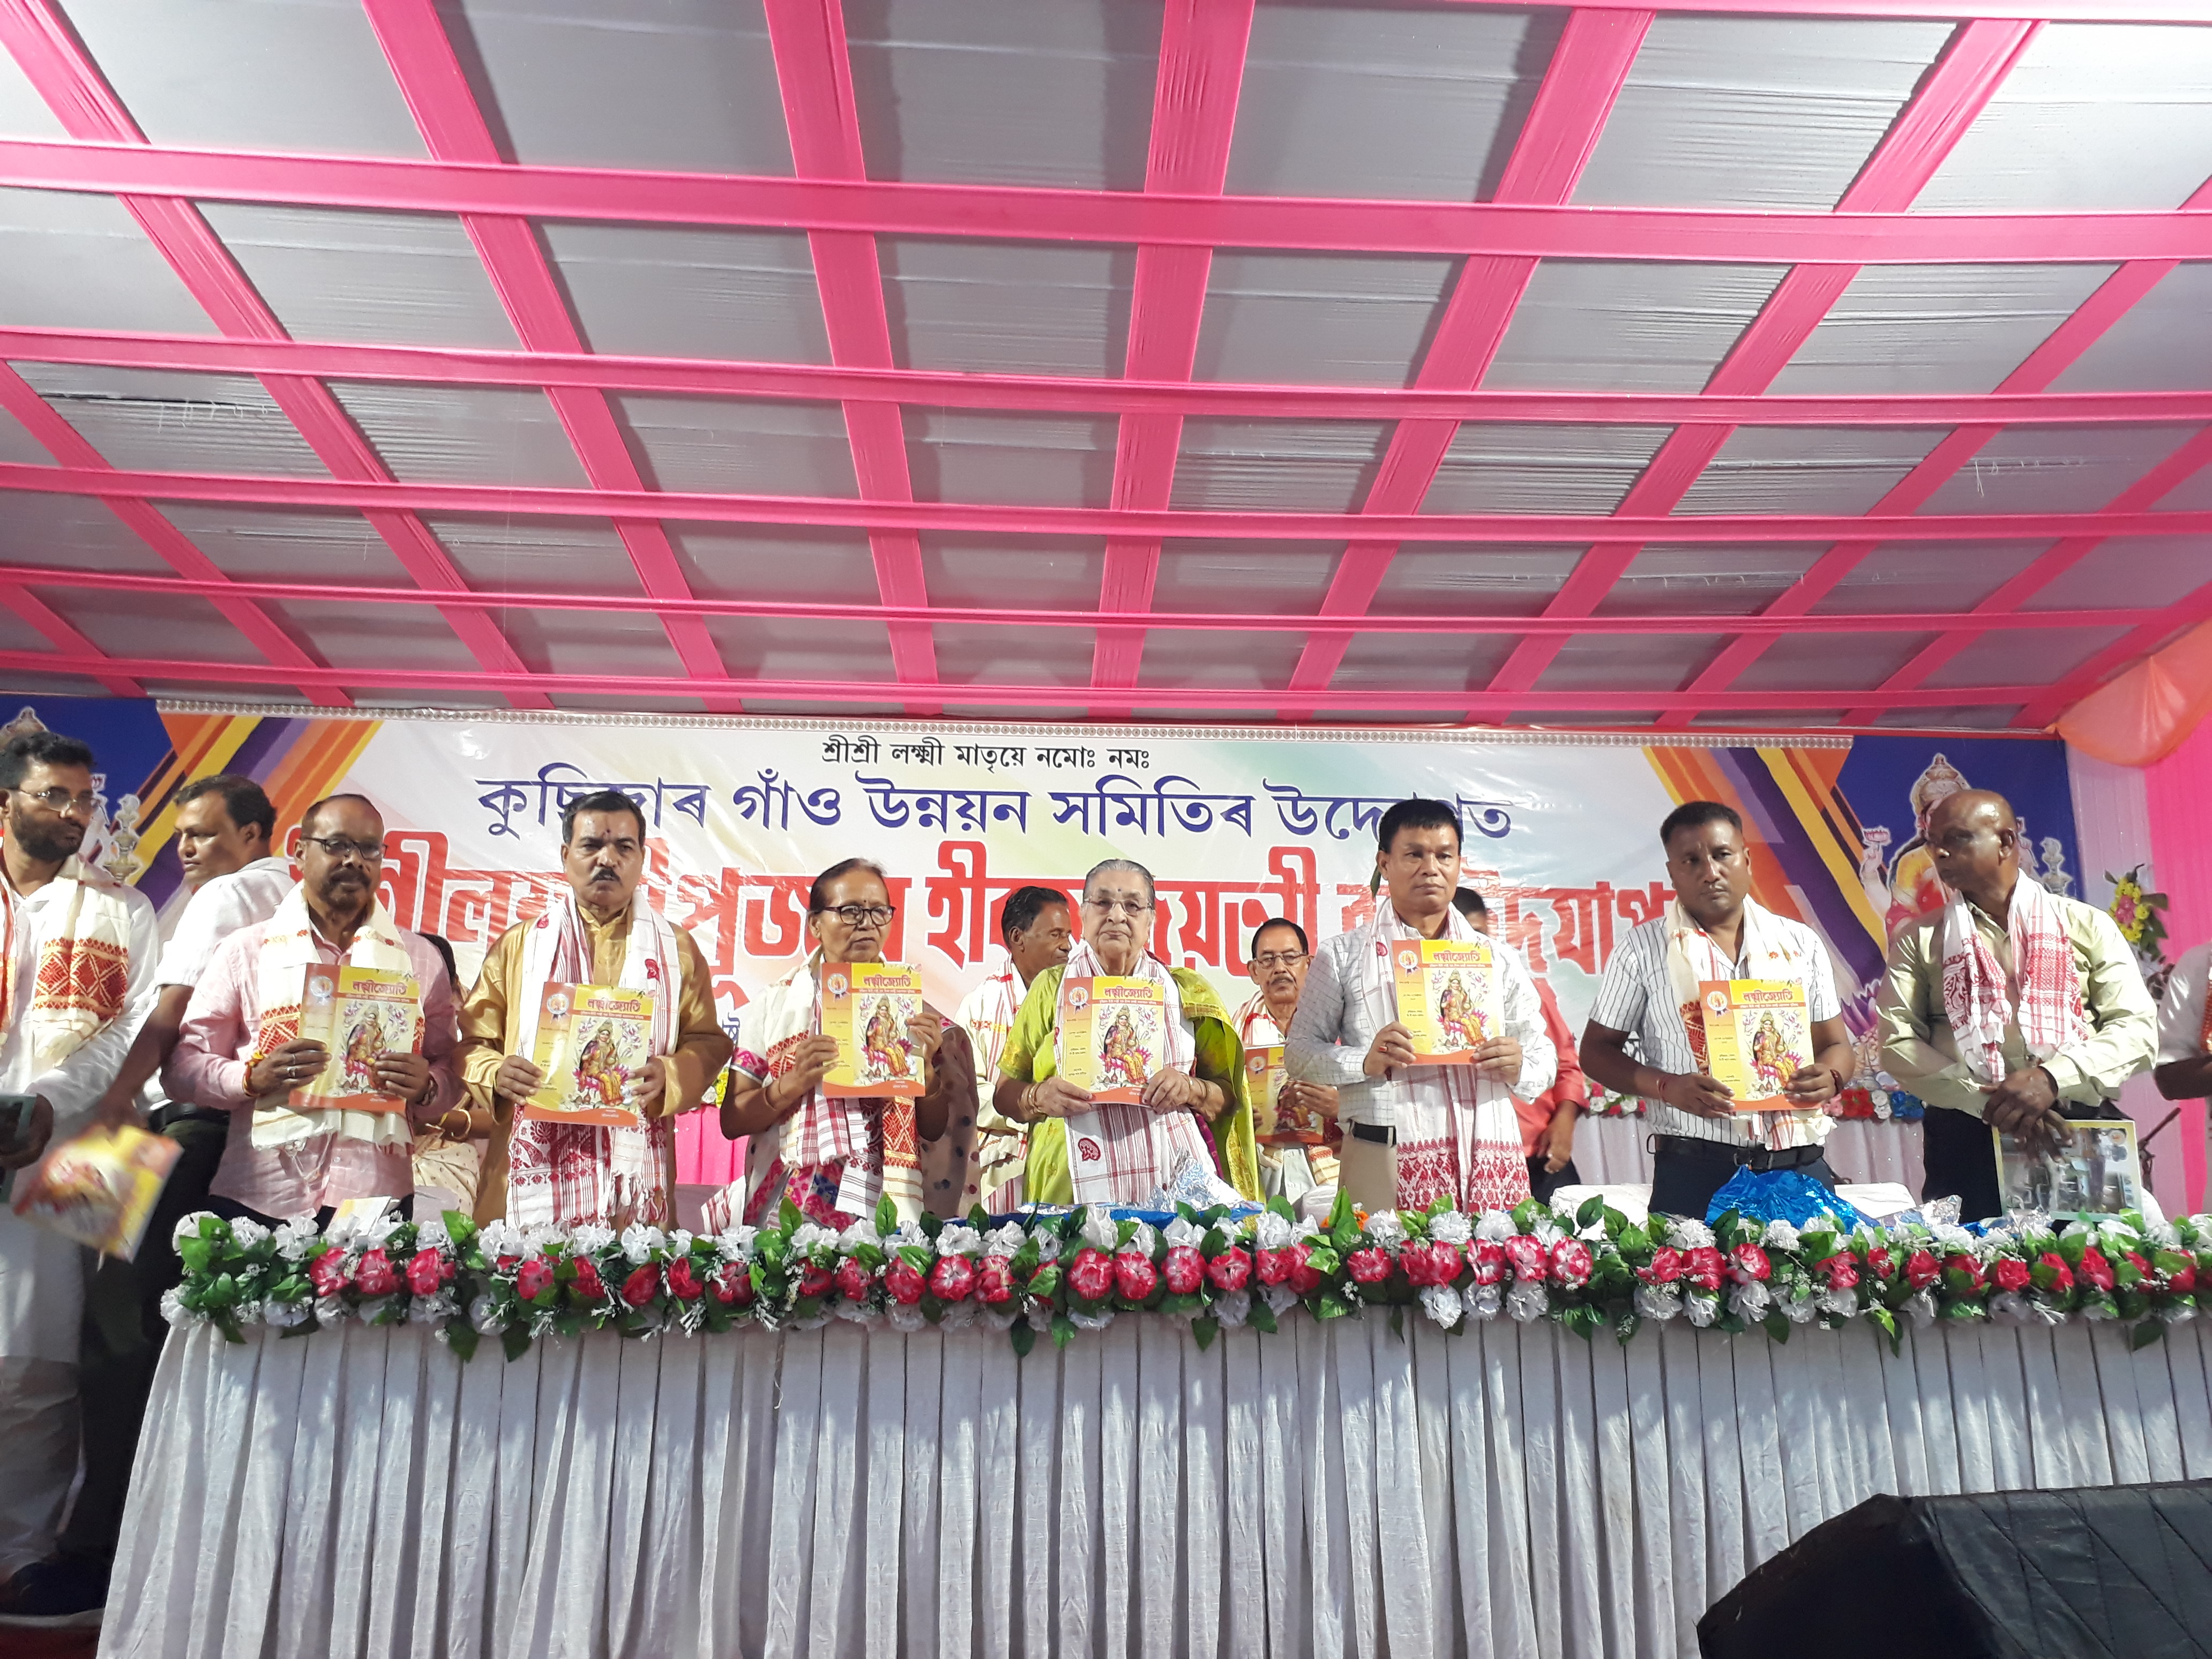 Laxmi puja celebrated in Baksa